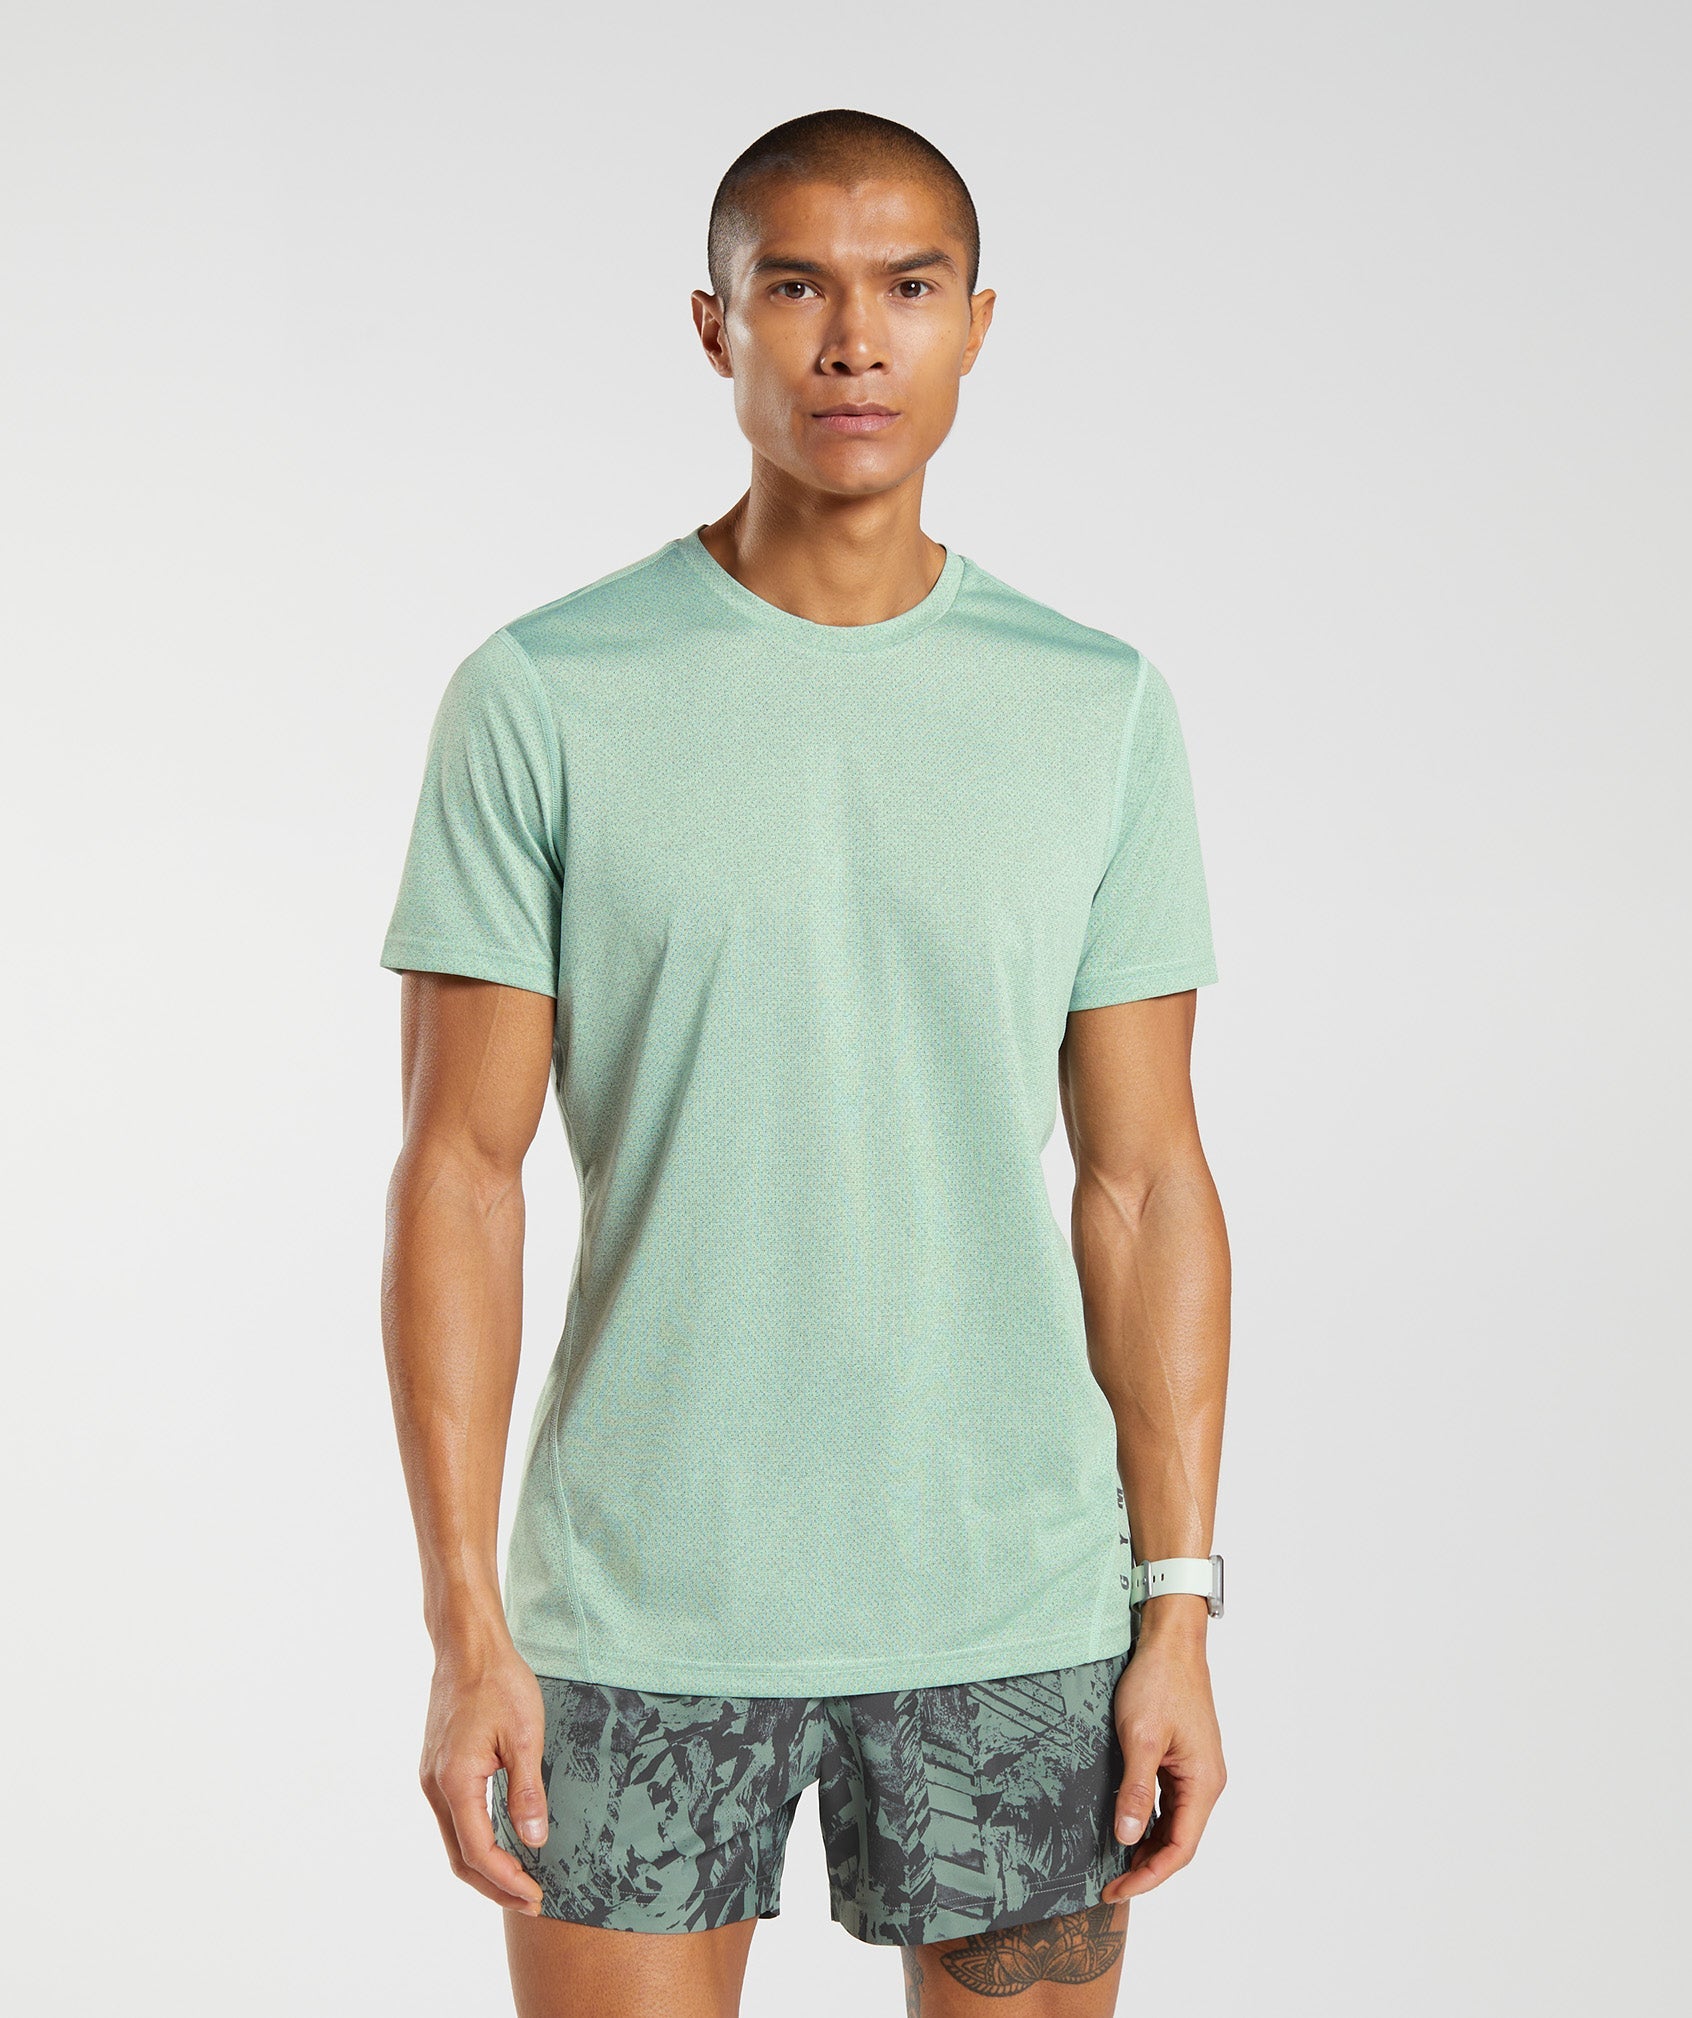 Gymshark Apollo T-Shirt, Men's Fashion, Tops & Sets, Tshirts